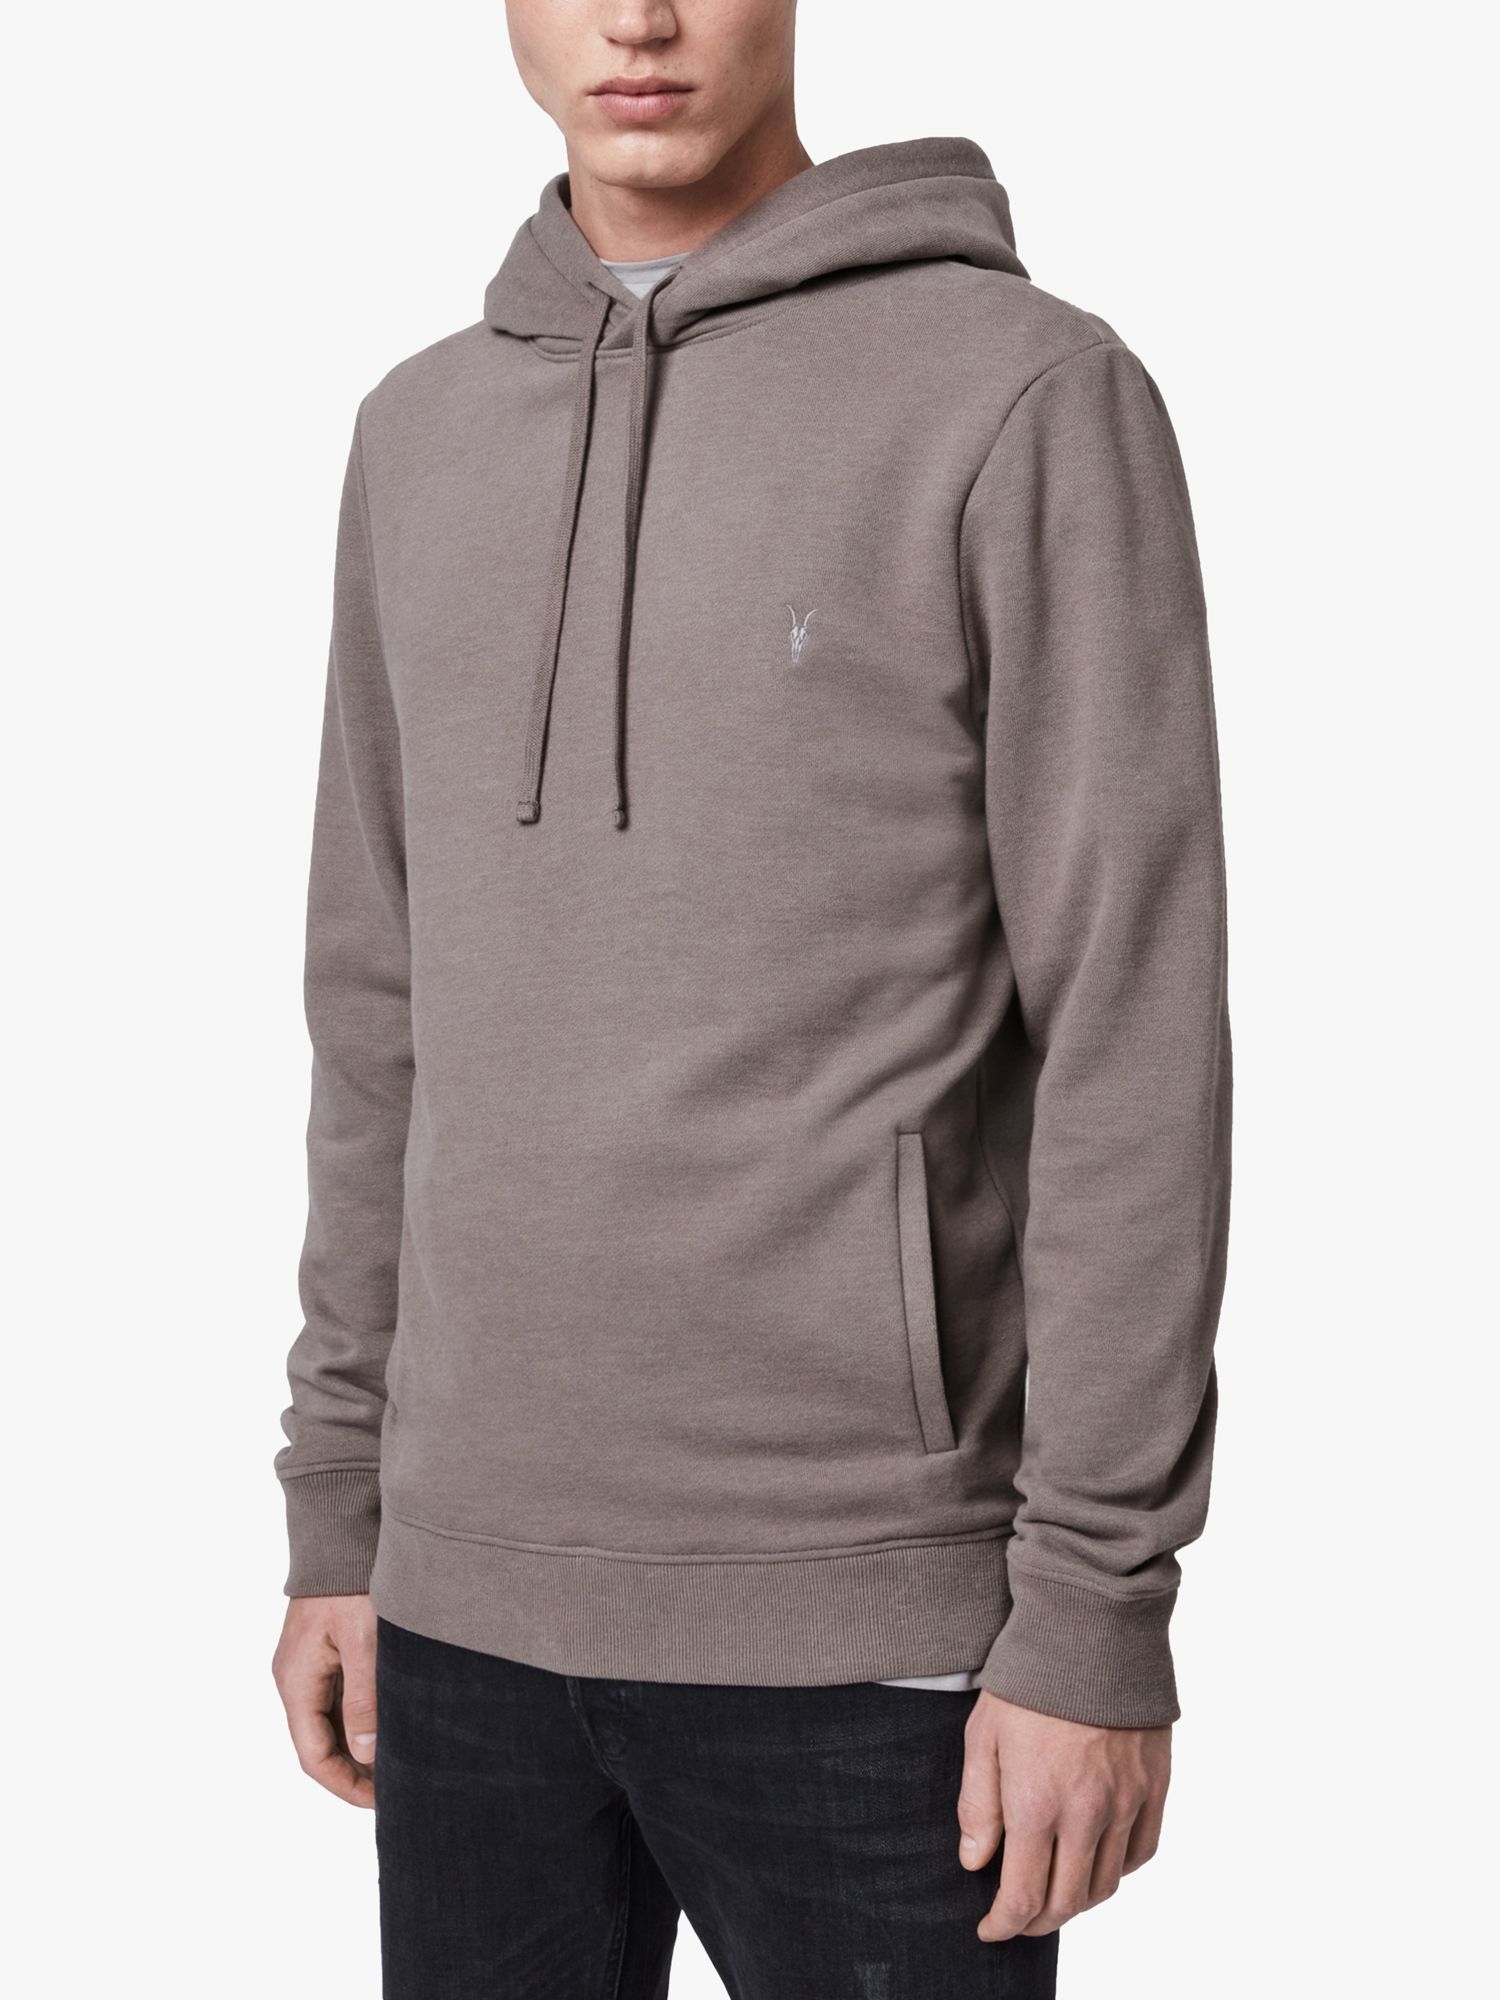 buy grey hoodie